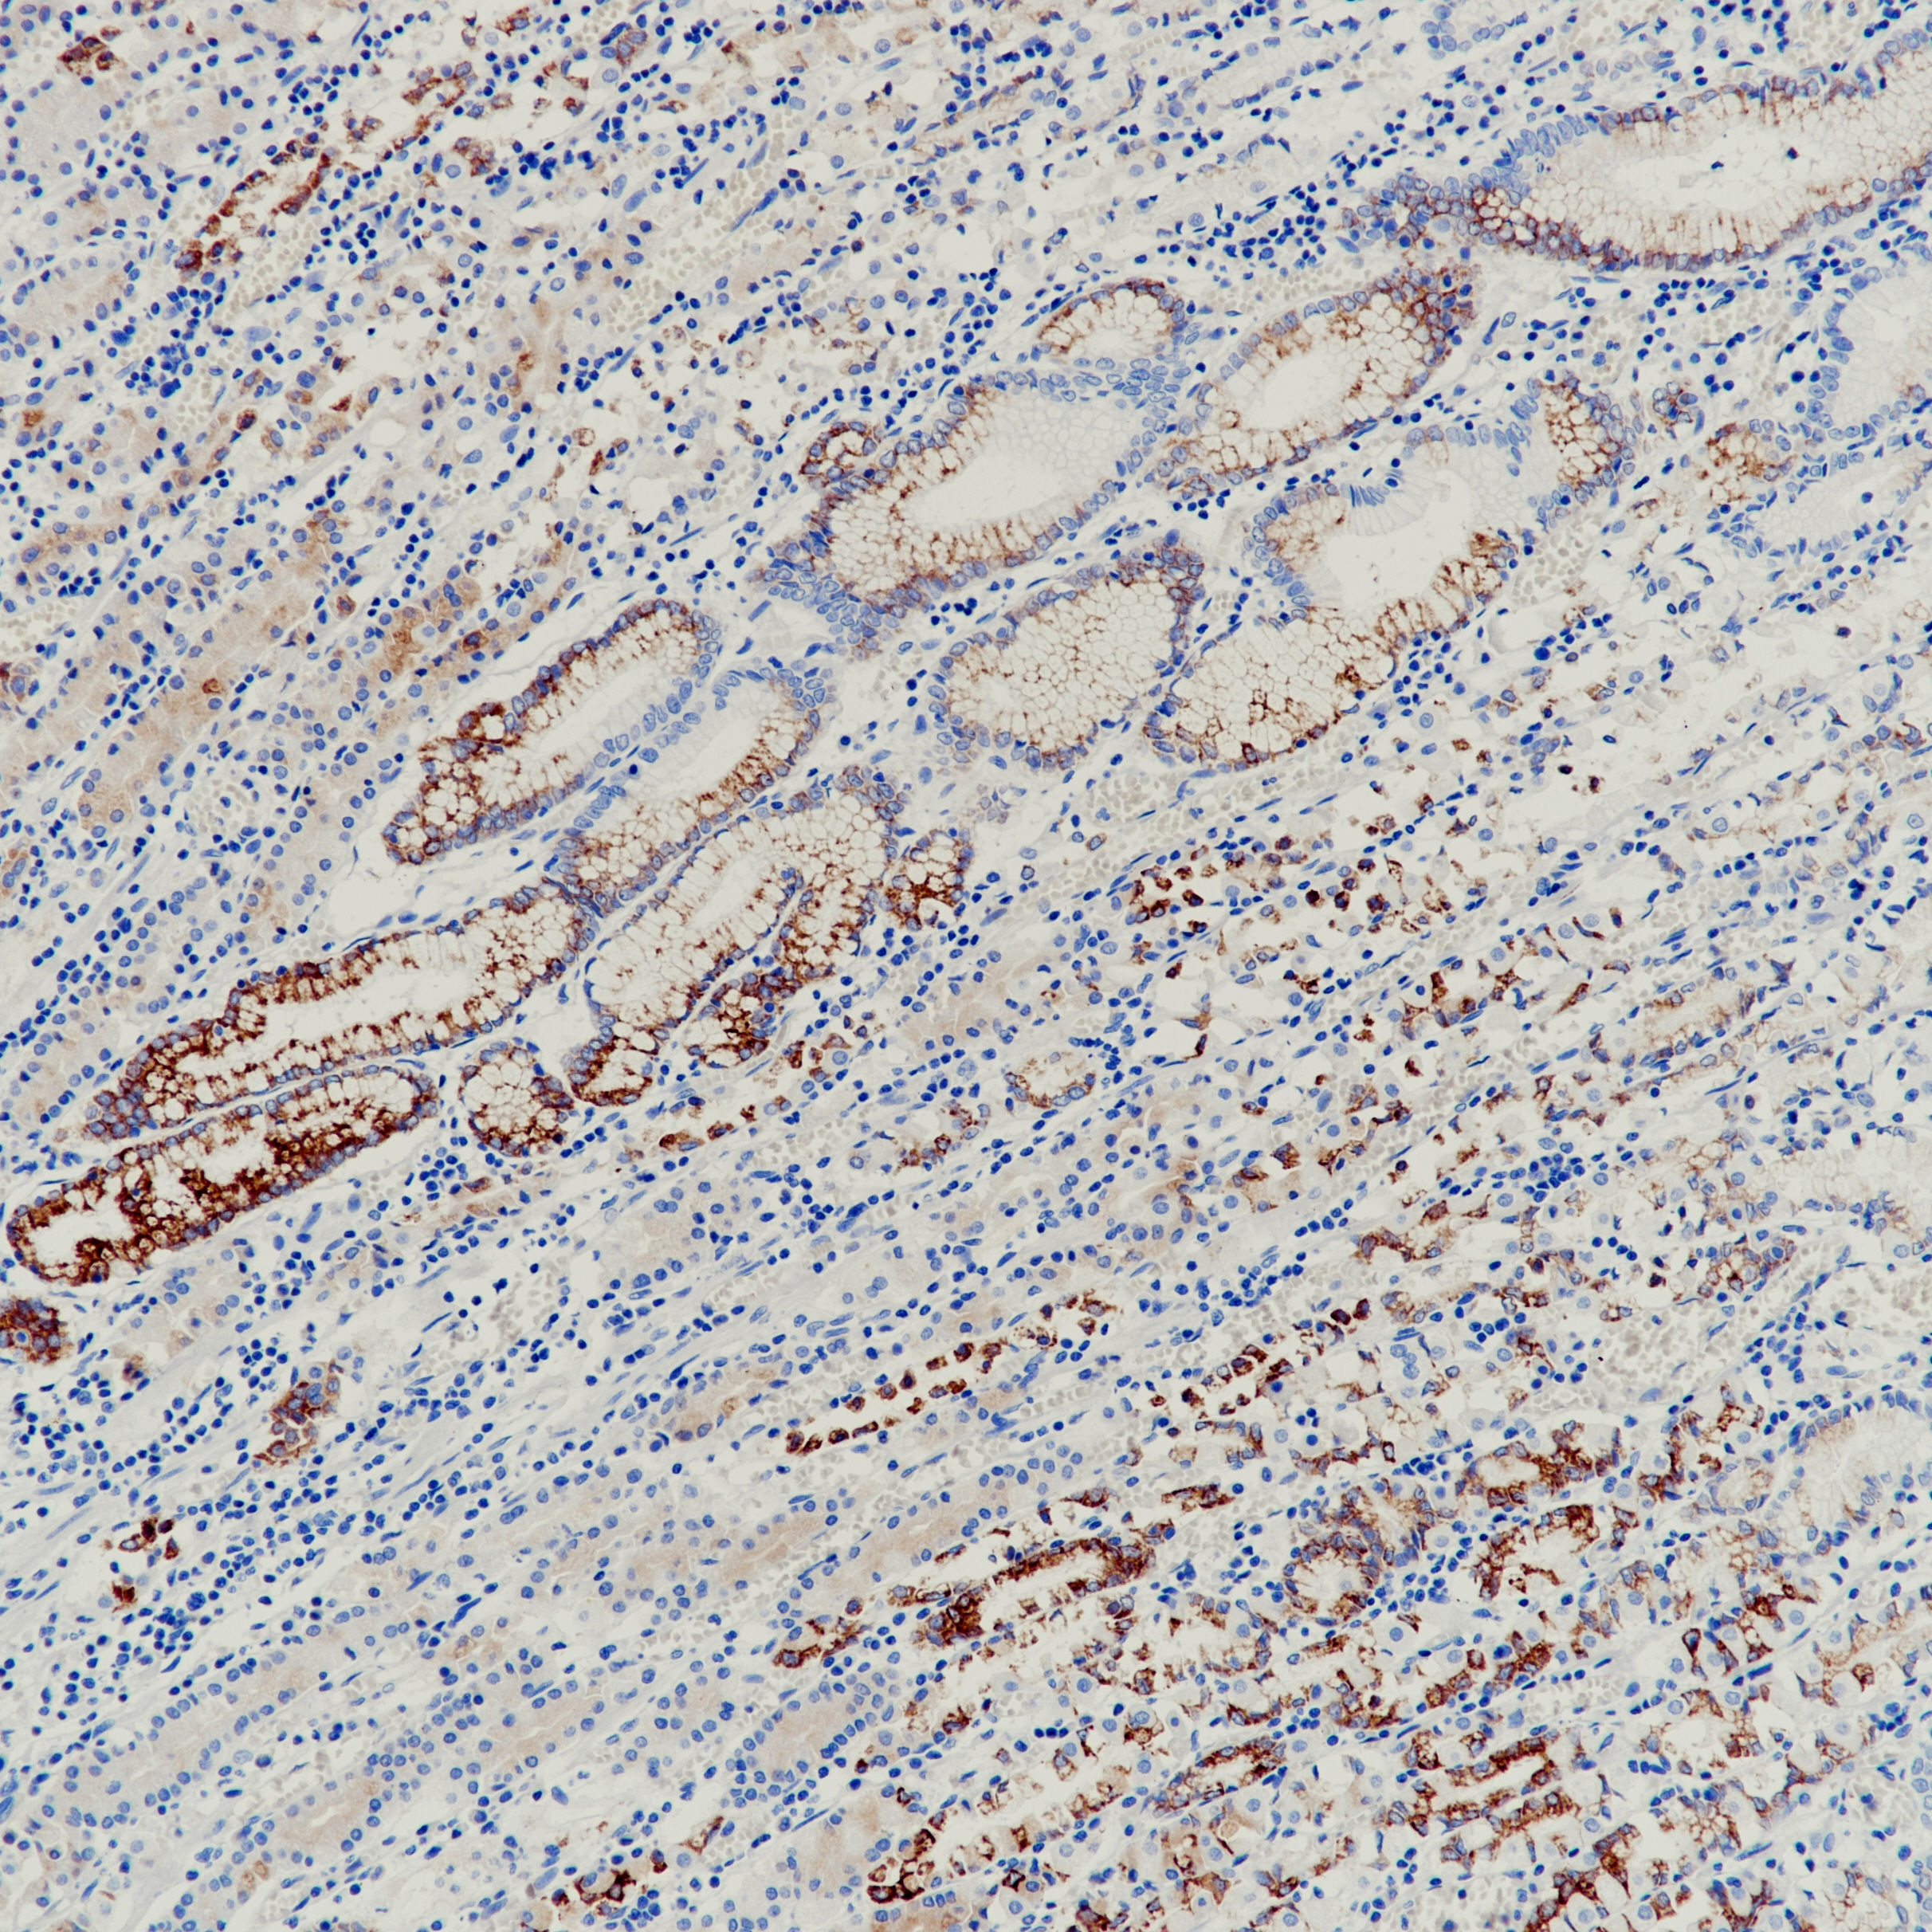 胃癌MUC6(EPR20623)染色